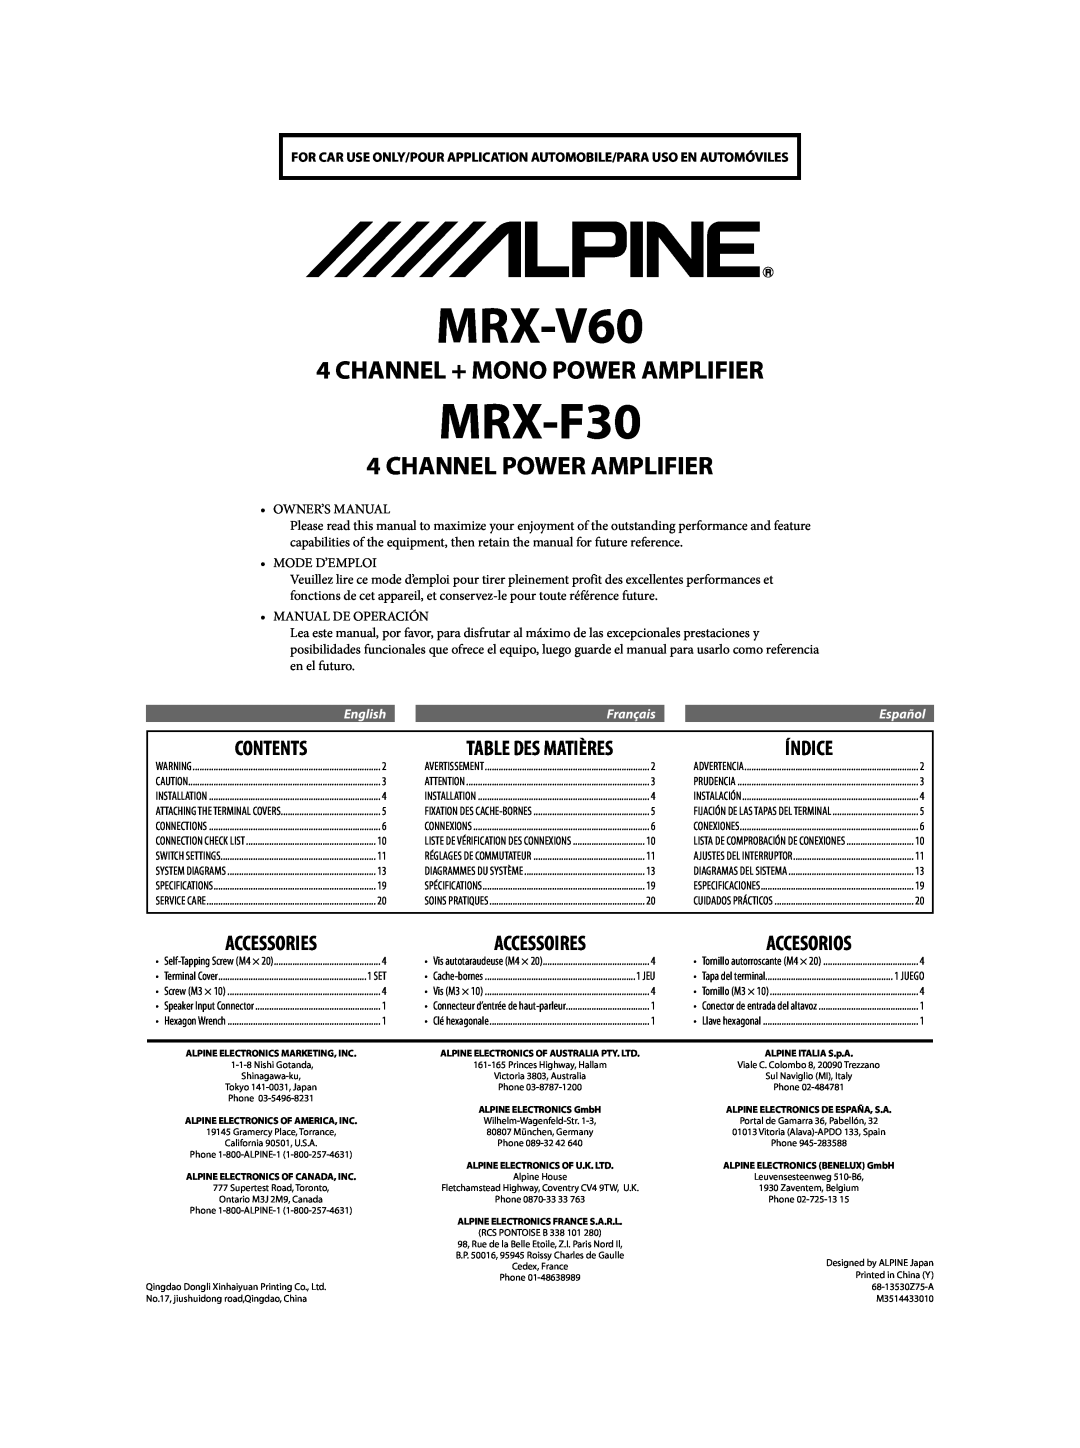 Alpine MRX-V60 owner manual Contents, Índice, Table Des Matières, EnglishFrançaisEspañol, Accessories, Accessoires 